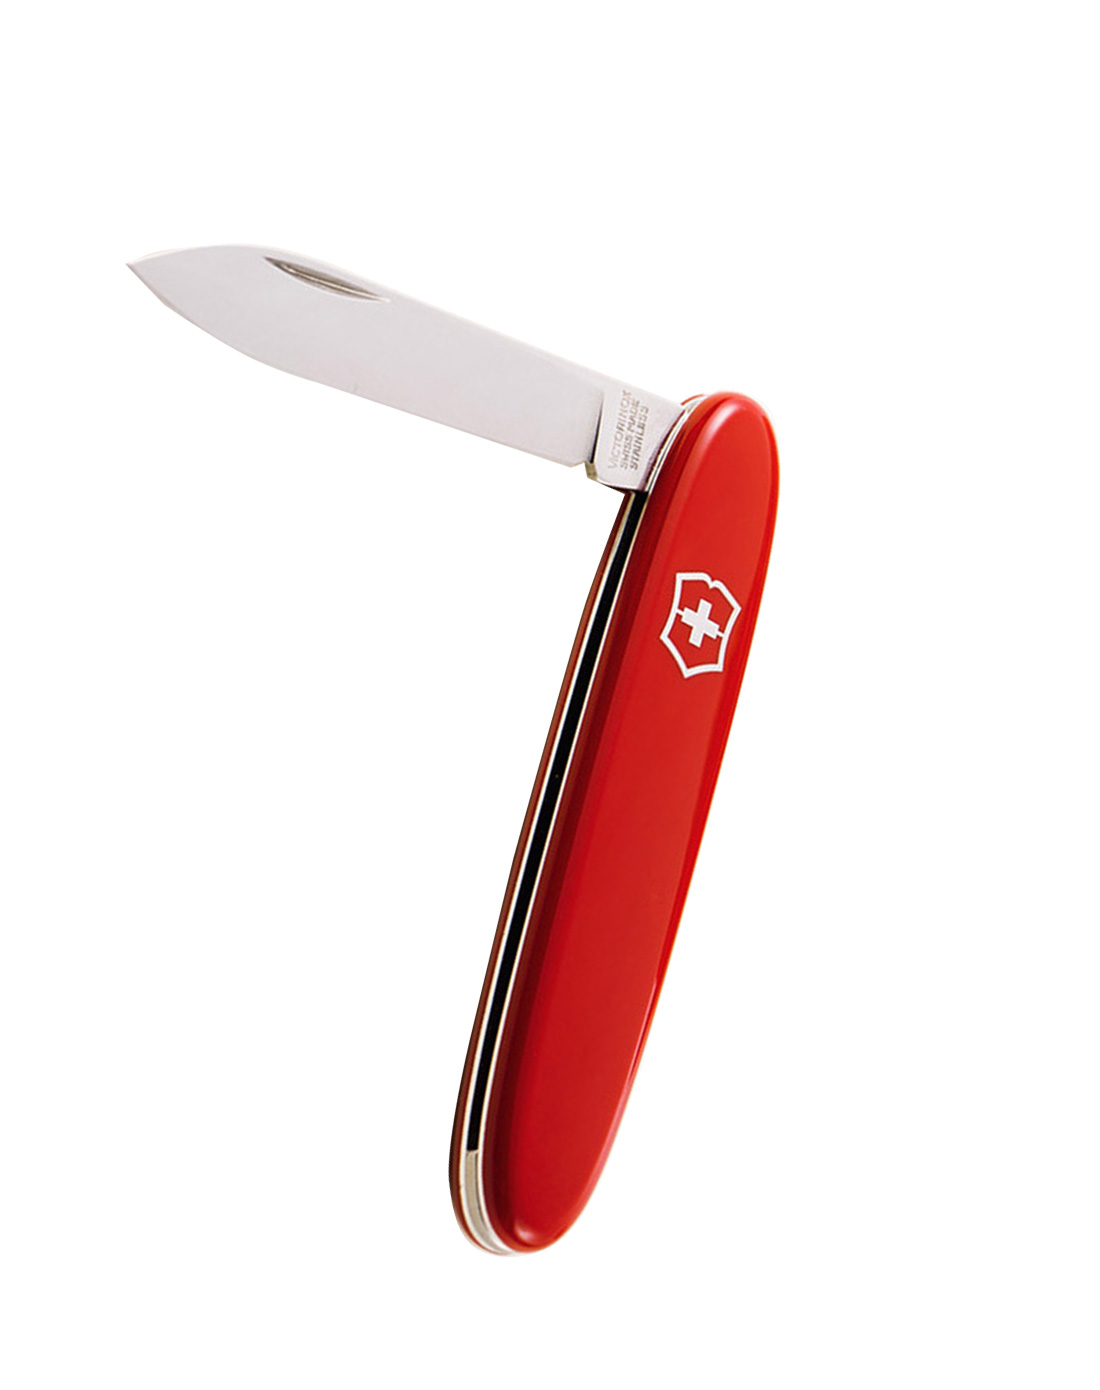 维氏VICTORINOX 礼品瑞士军刀 红色少年礼品 84mm 单刀瑞士正版 水果刀 0.6910材质不锈钢1-5项功能